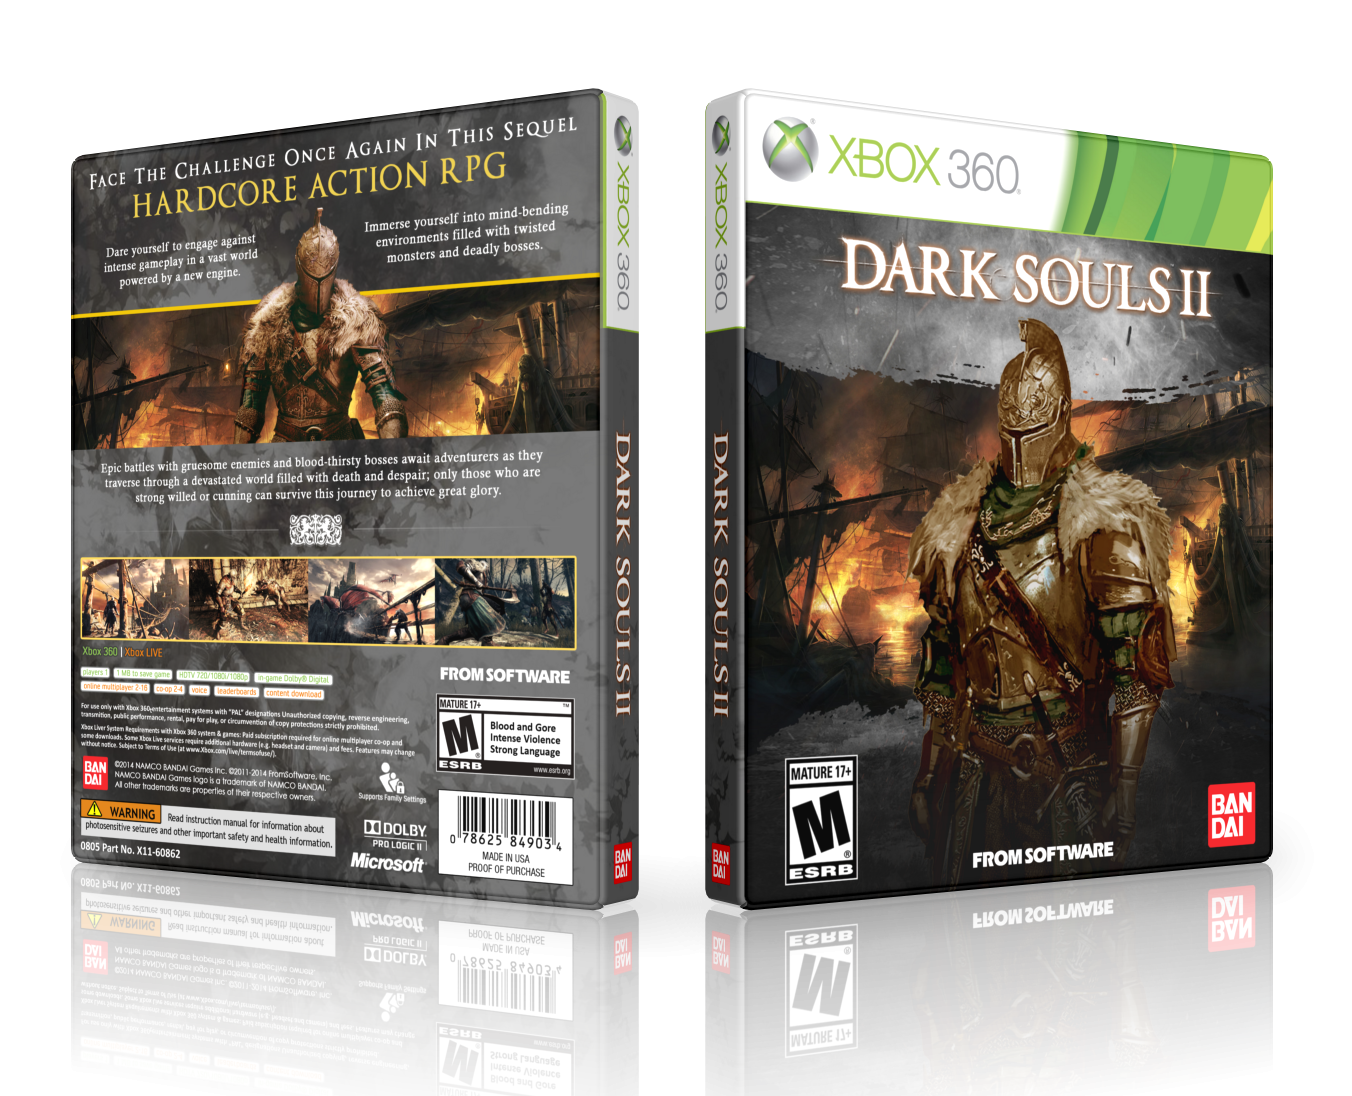 Dark Souls II box cover